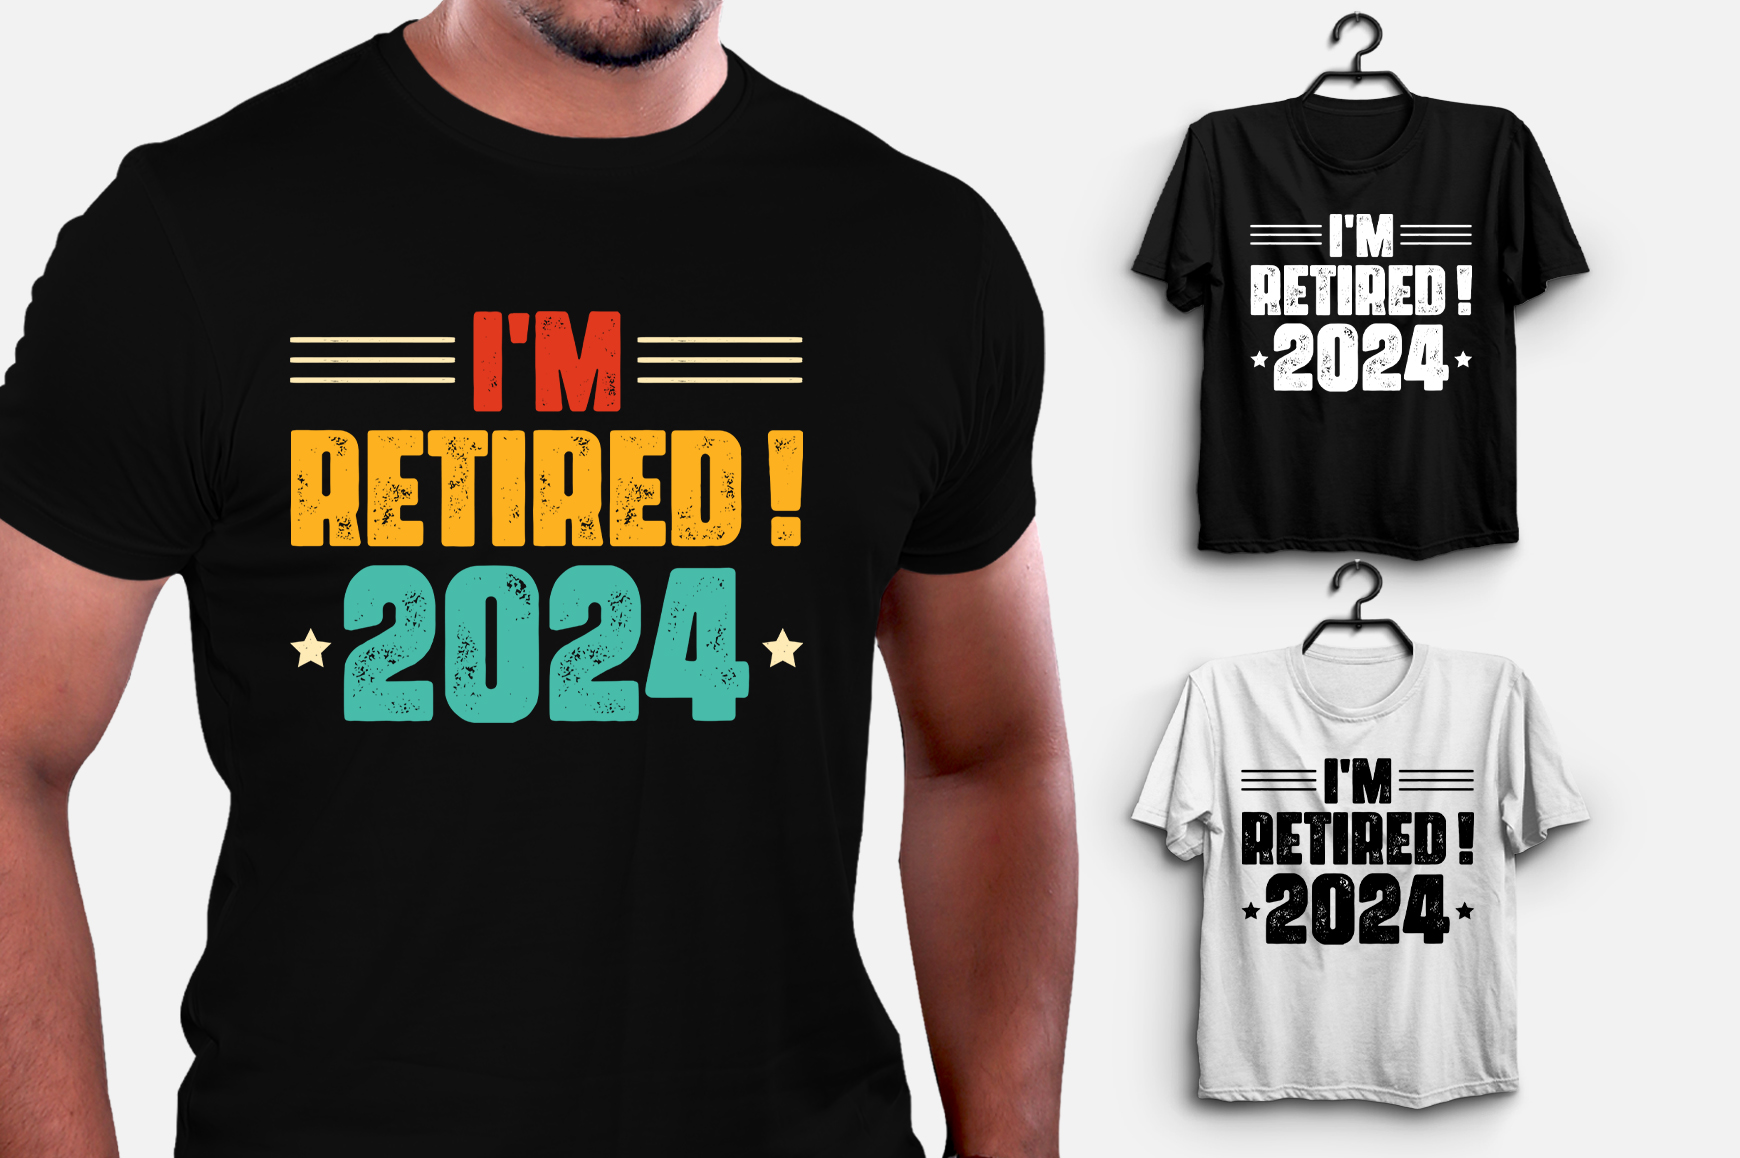 I'm Retired 2024 TShirt Design Buy tshirt designs